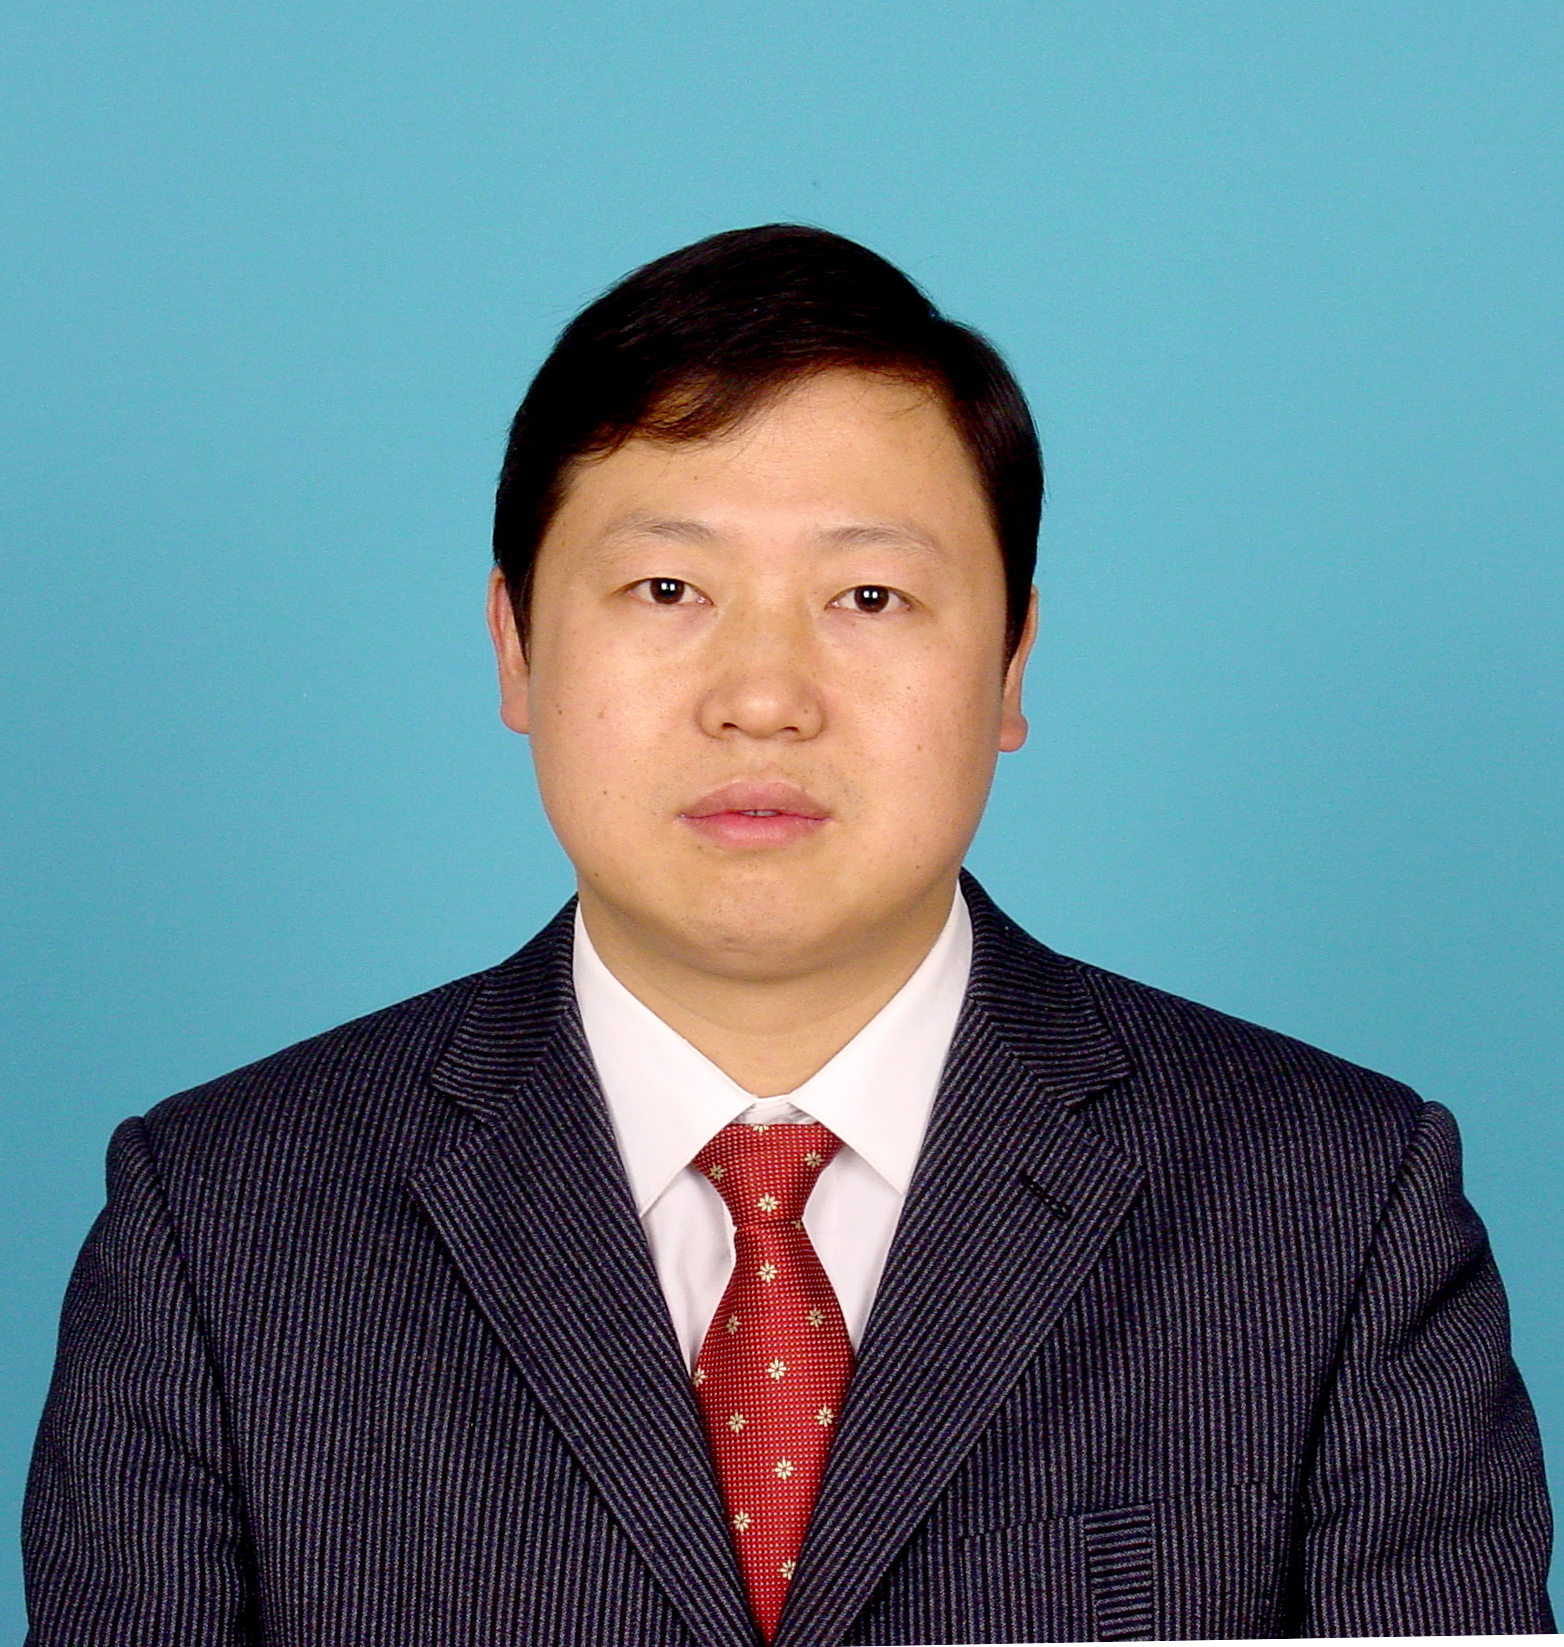 Yuan Weipeng